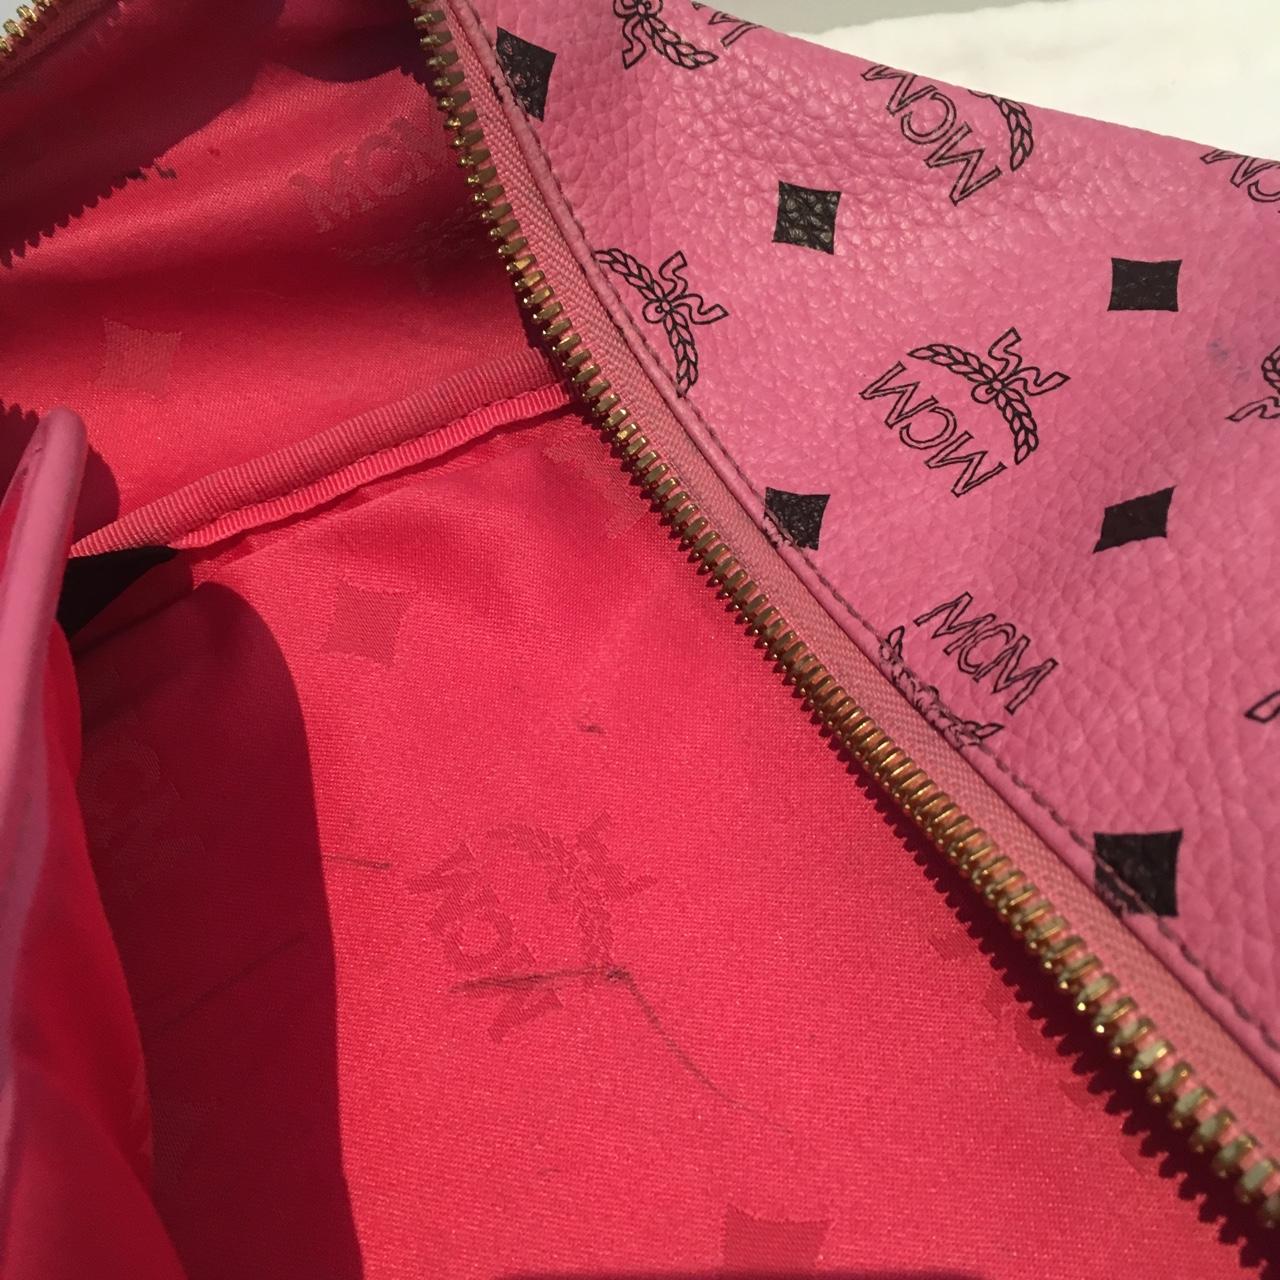 Pink/Gold MCM backpack, signs of wear evident inside - Depop